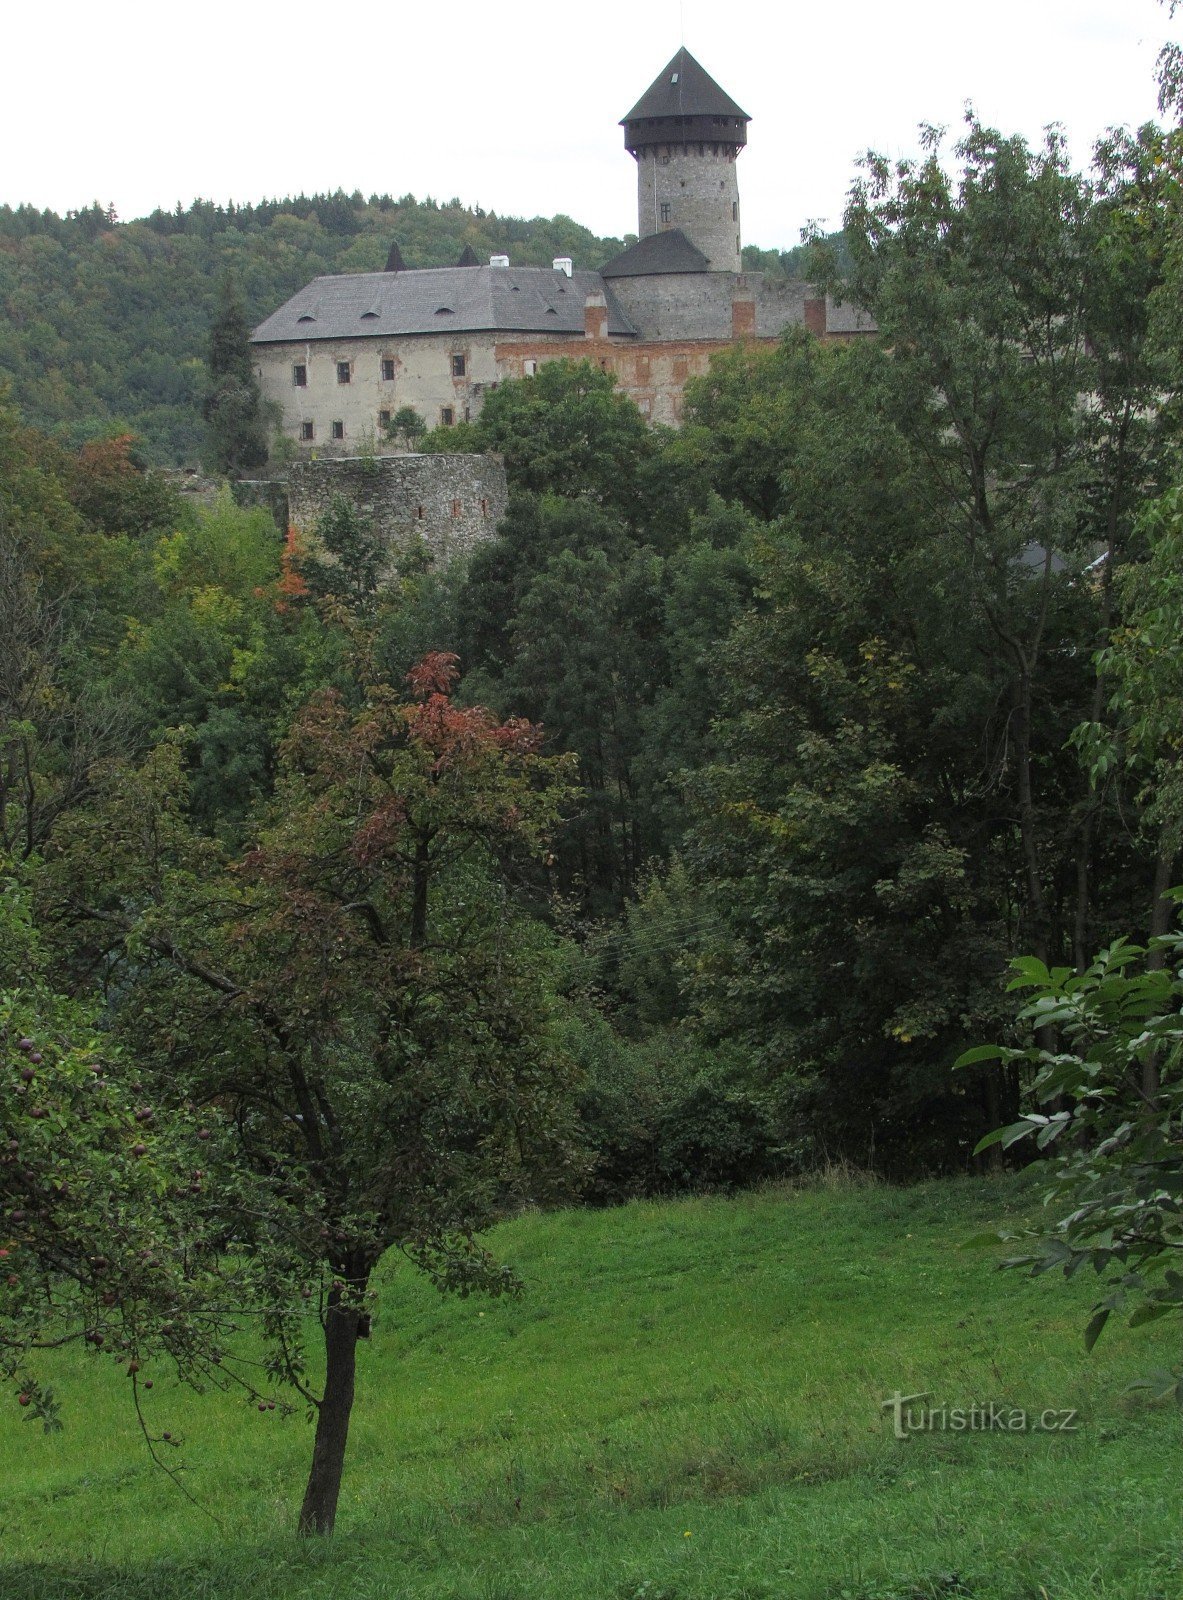 Sovinice avancerad befästning - Lichtejnštejnka tornet